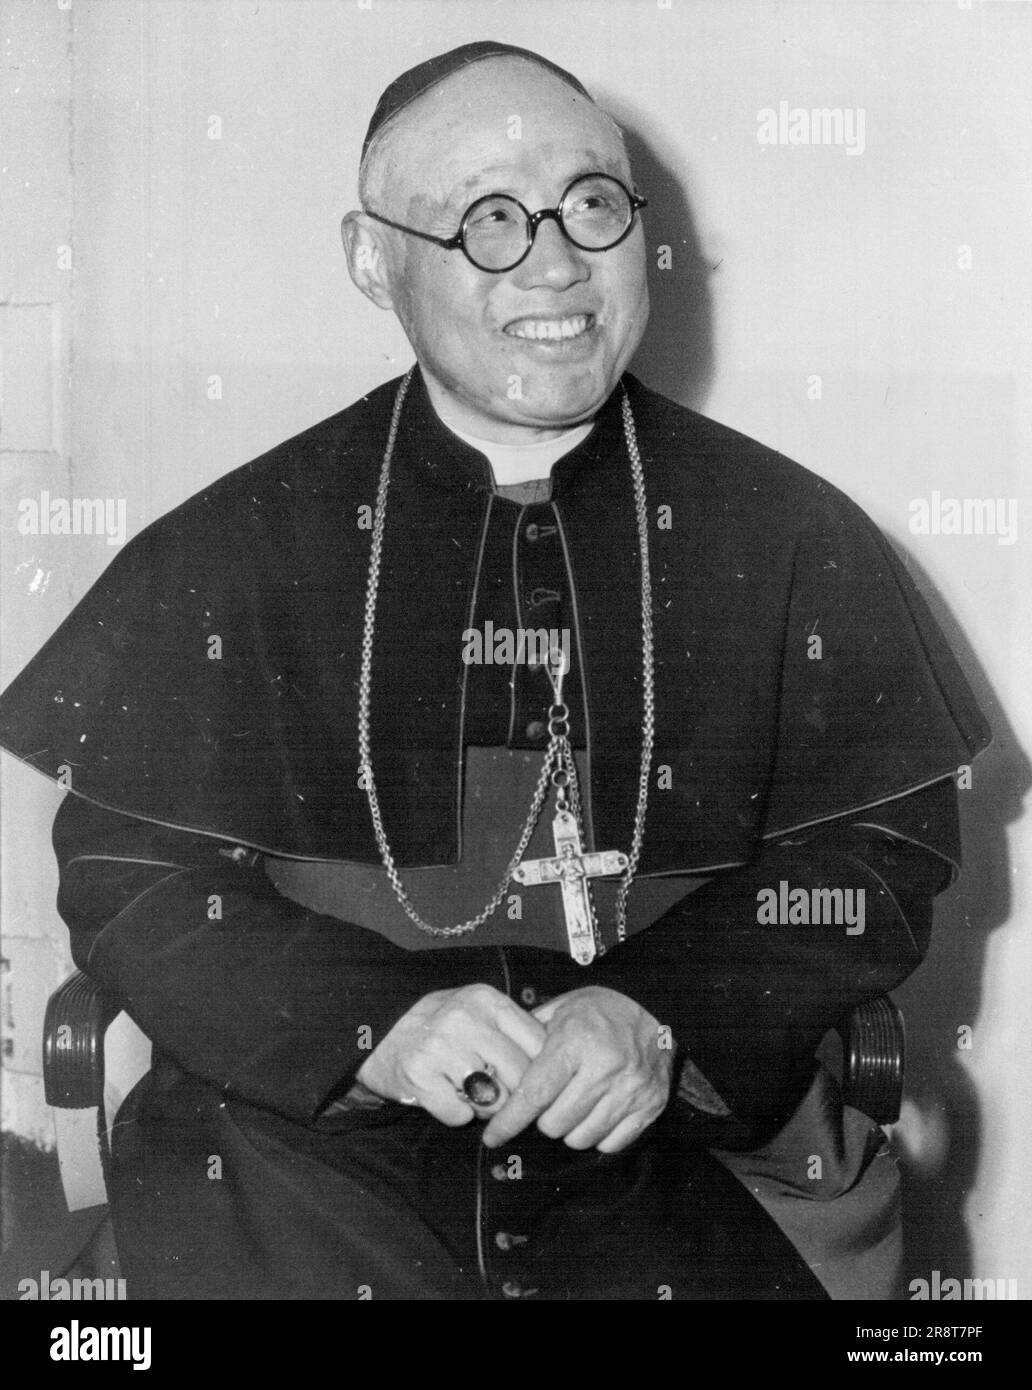 Thomas, Cardinale Tien Vescovo di Tsingtao, primo Vescovo cinese ad essere elevato al Sacro Collegio dei Cardinali. Fotografato a San Diego 2/1/46. 18 febbraio 1946. (Foto di Wide World Photos). Foto Stock